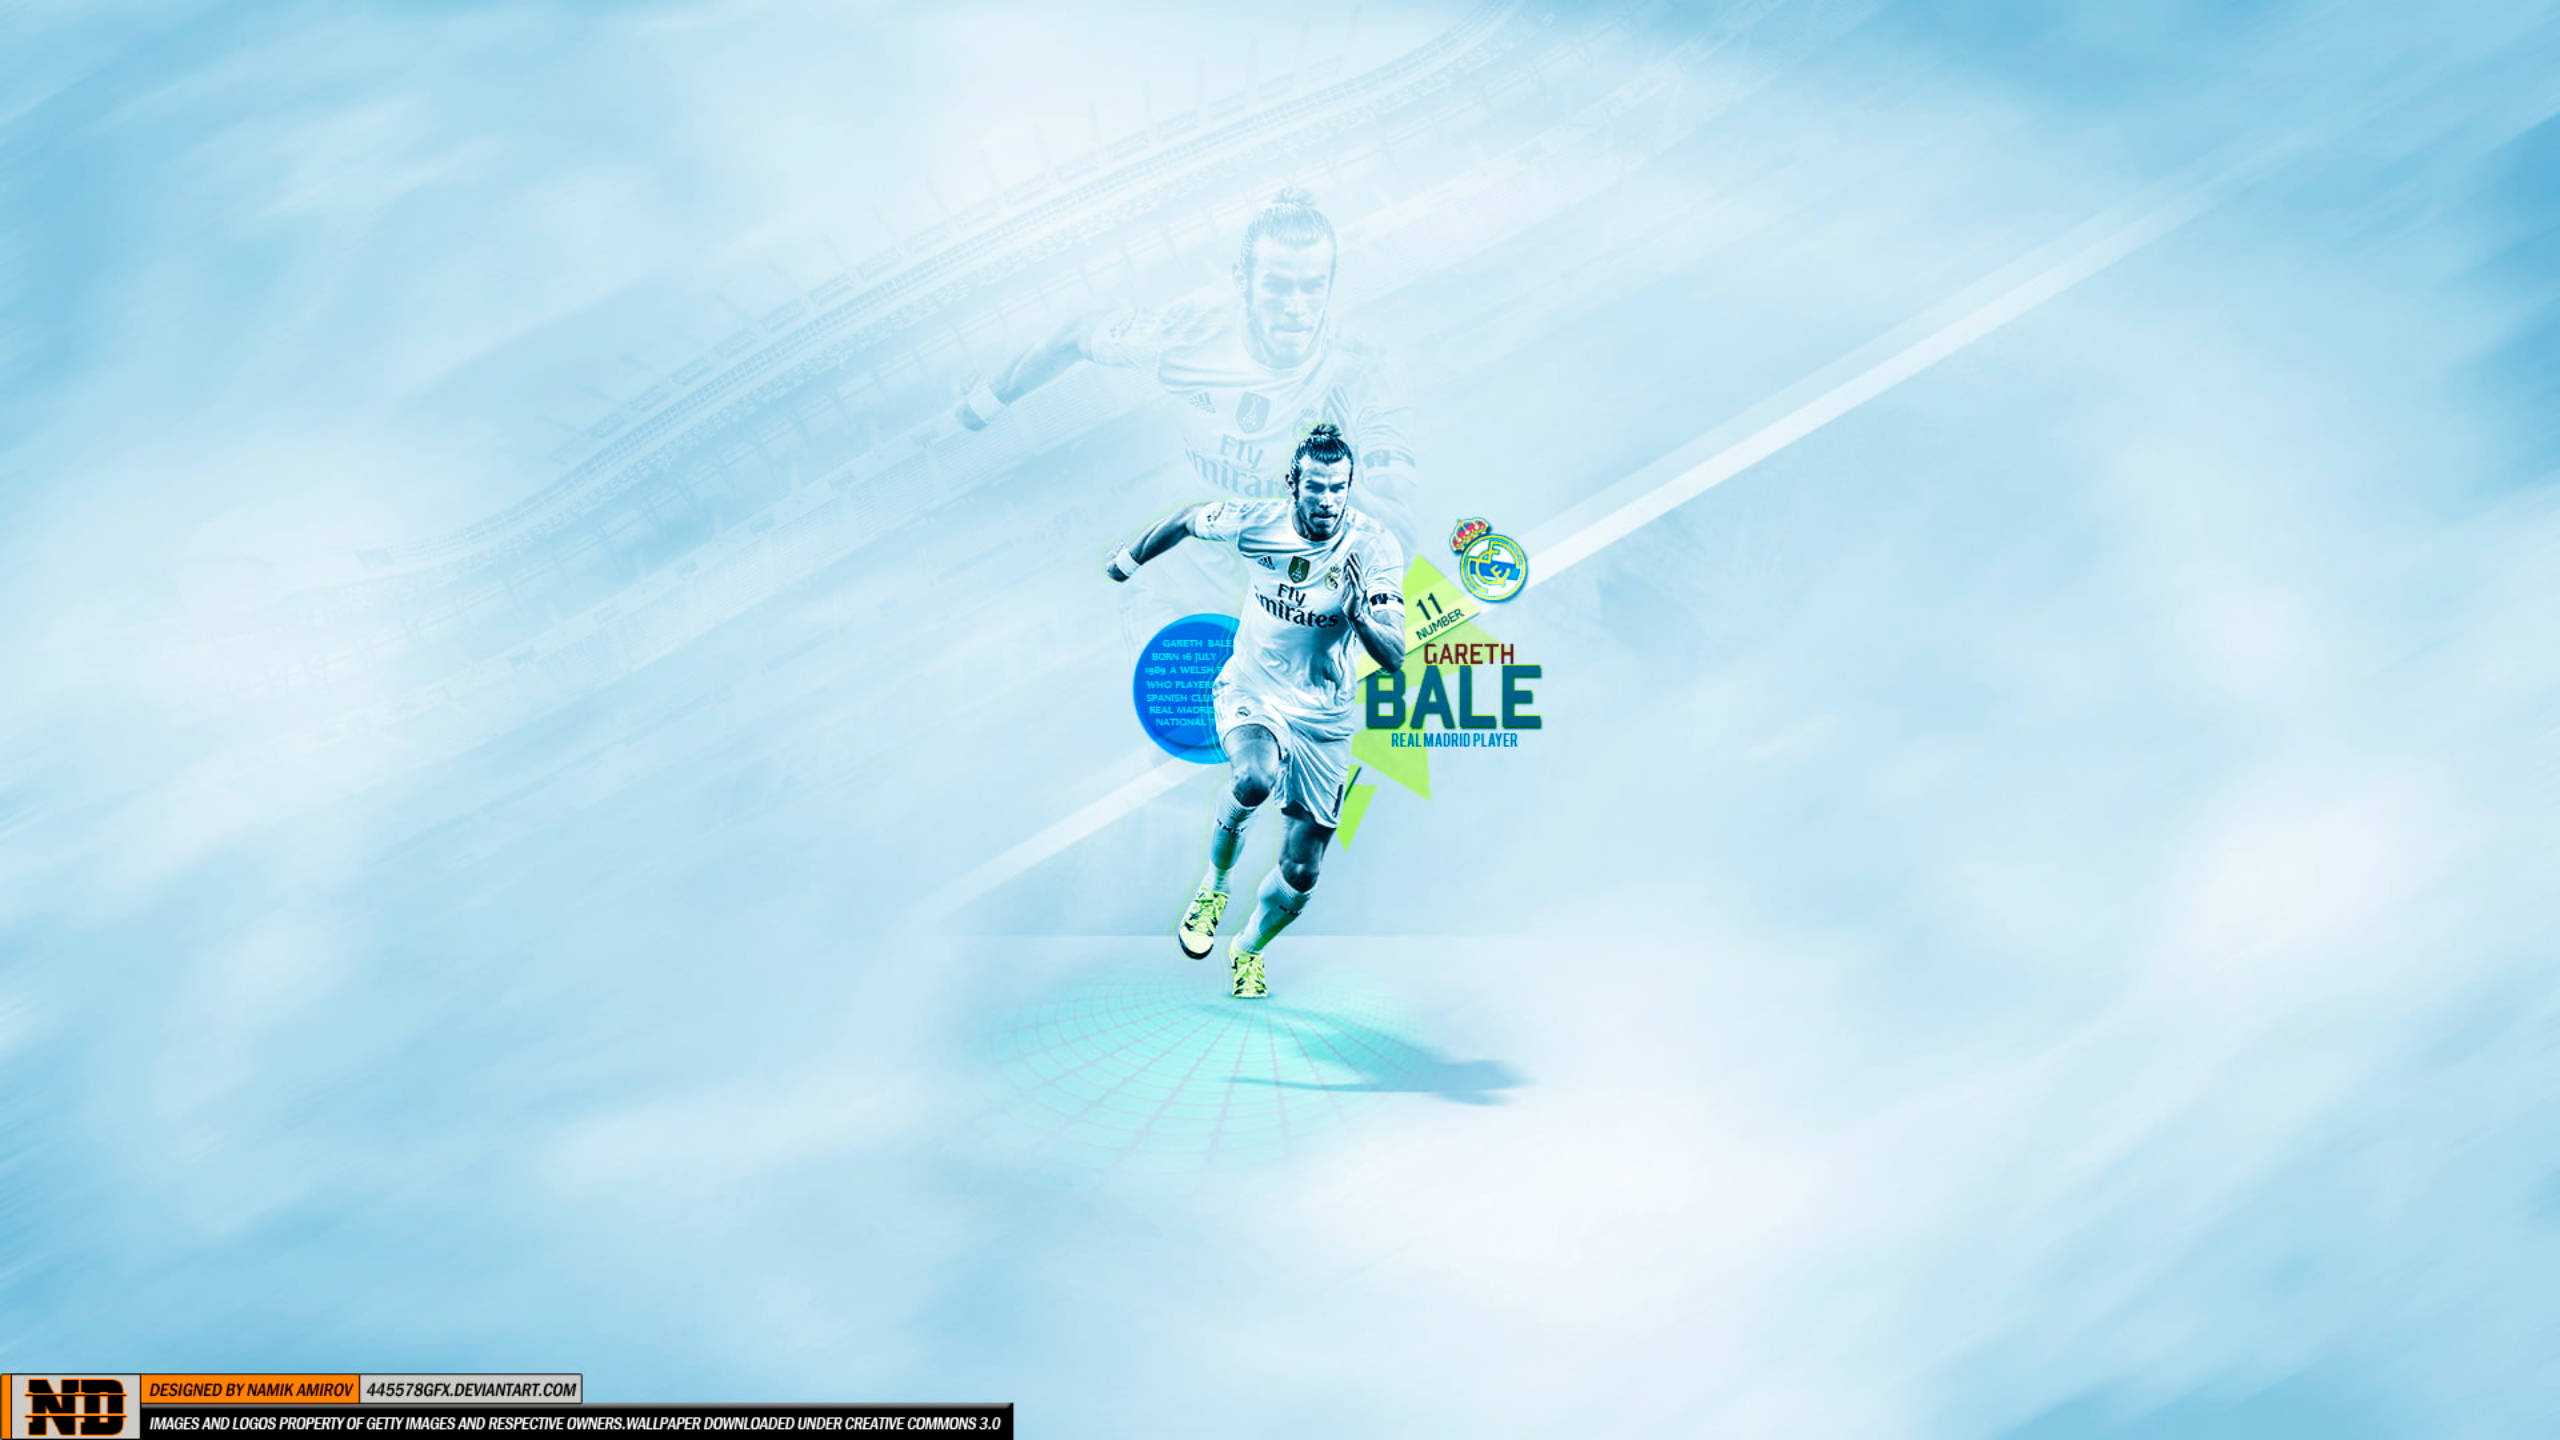 Download Gareth Bale In Digital Aesthetic Wallpaper 